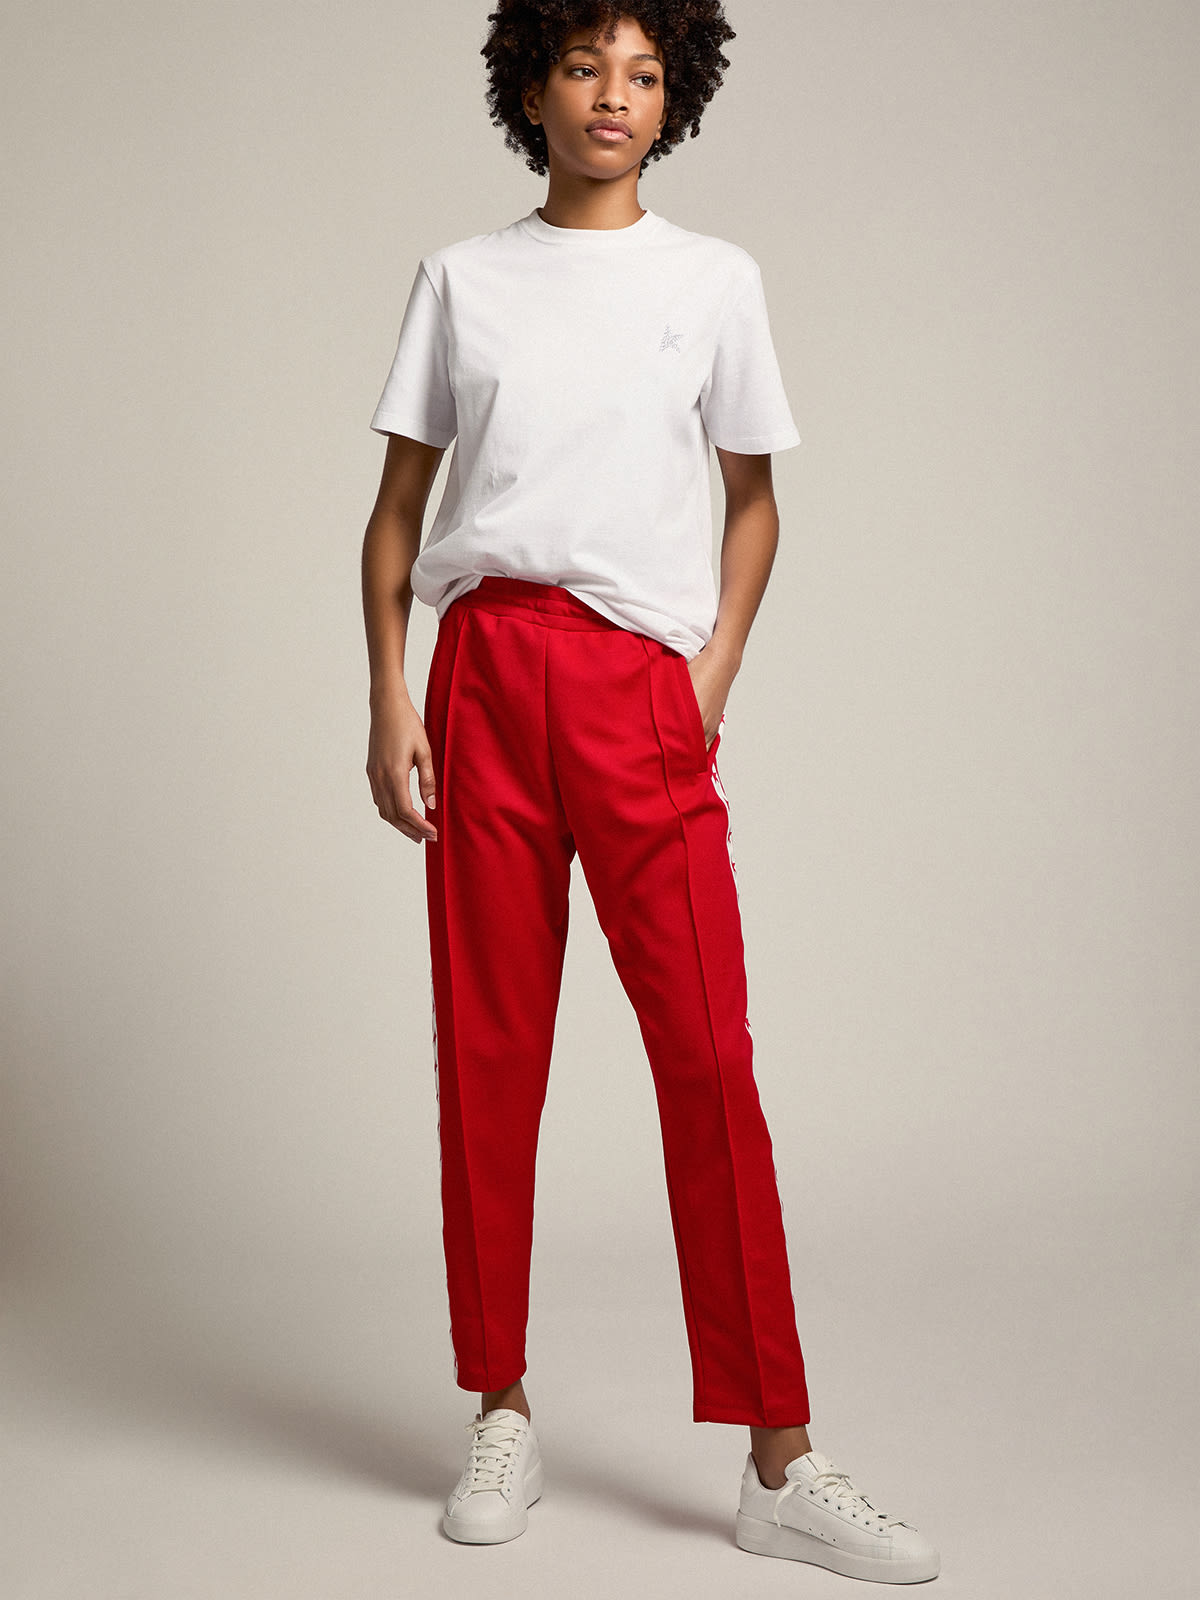 Golden Goose - Pantalon de jogging Doro collection Star de couleur rouge avec étoiles rouges sur les côtés in 